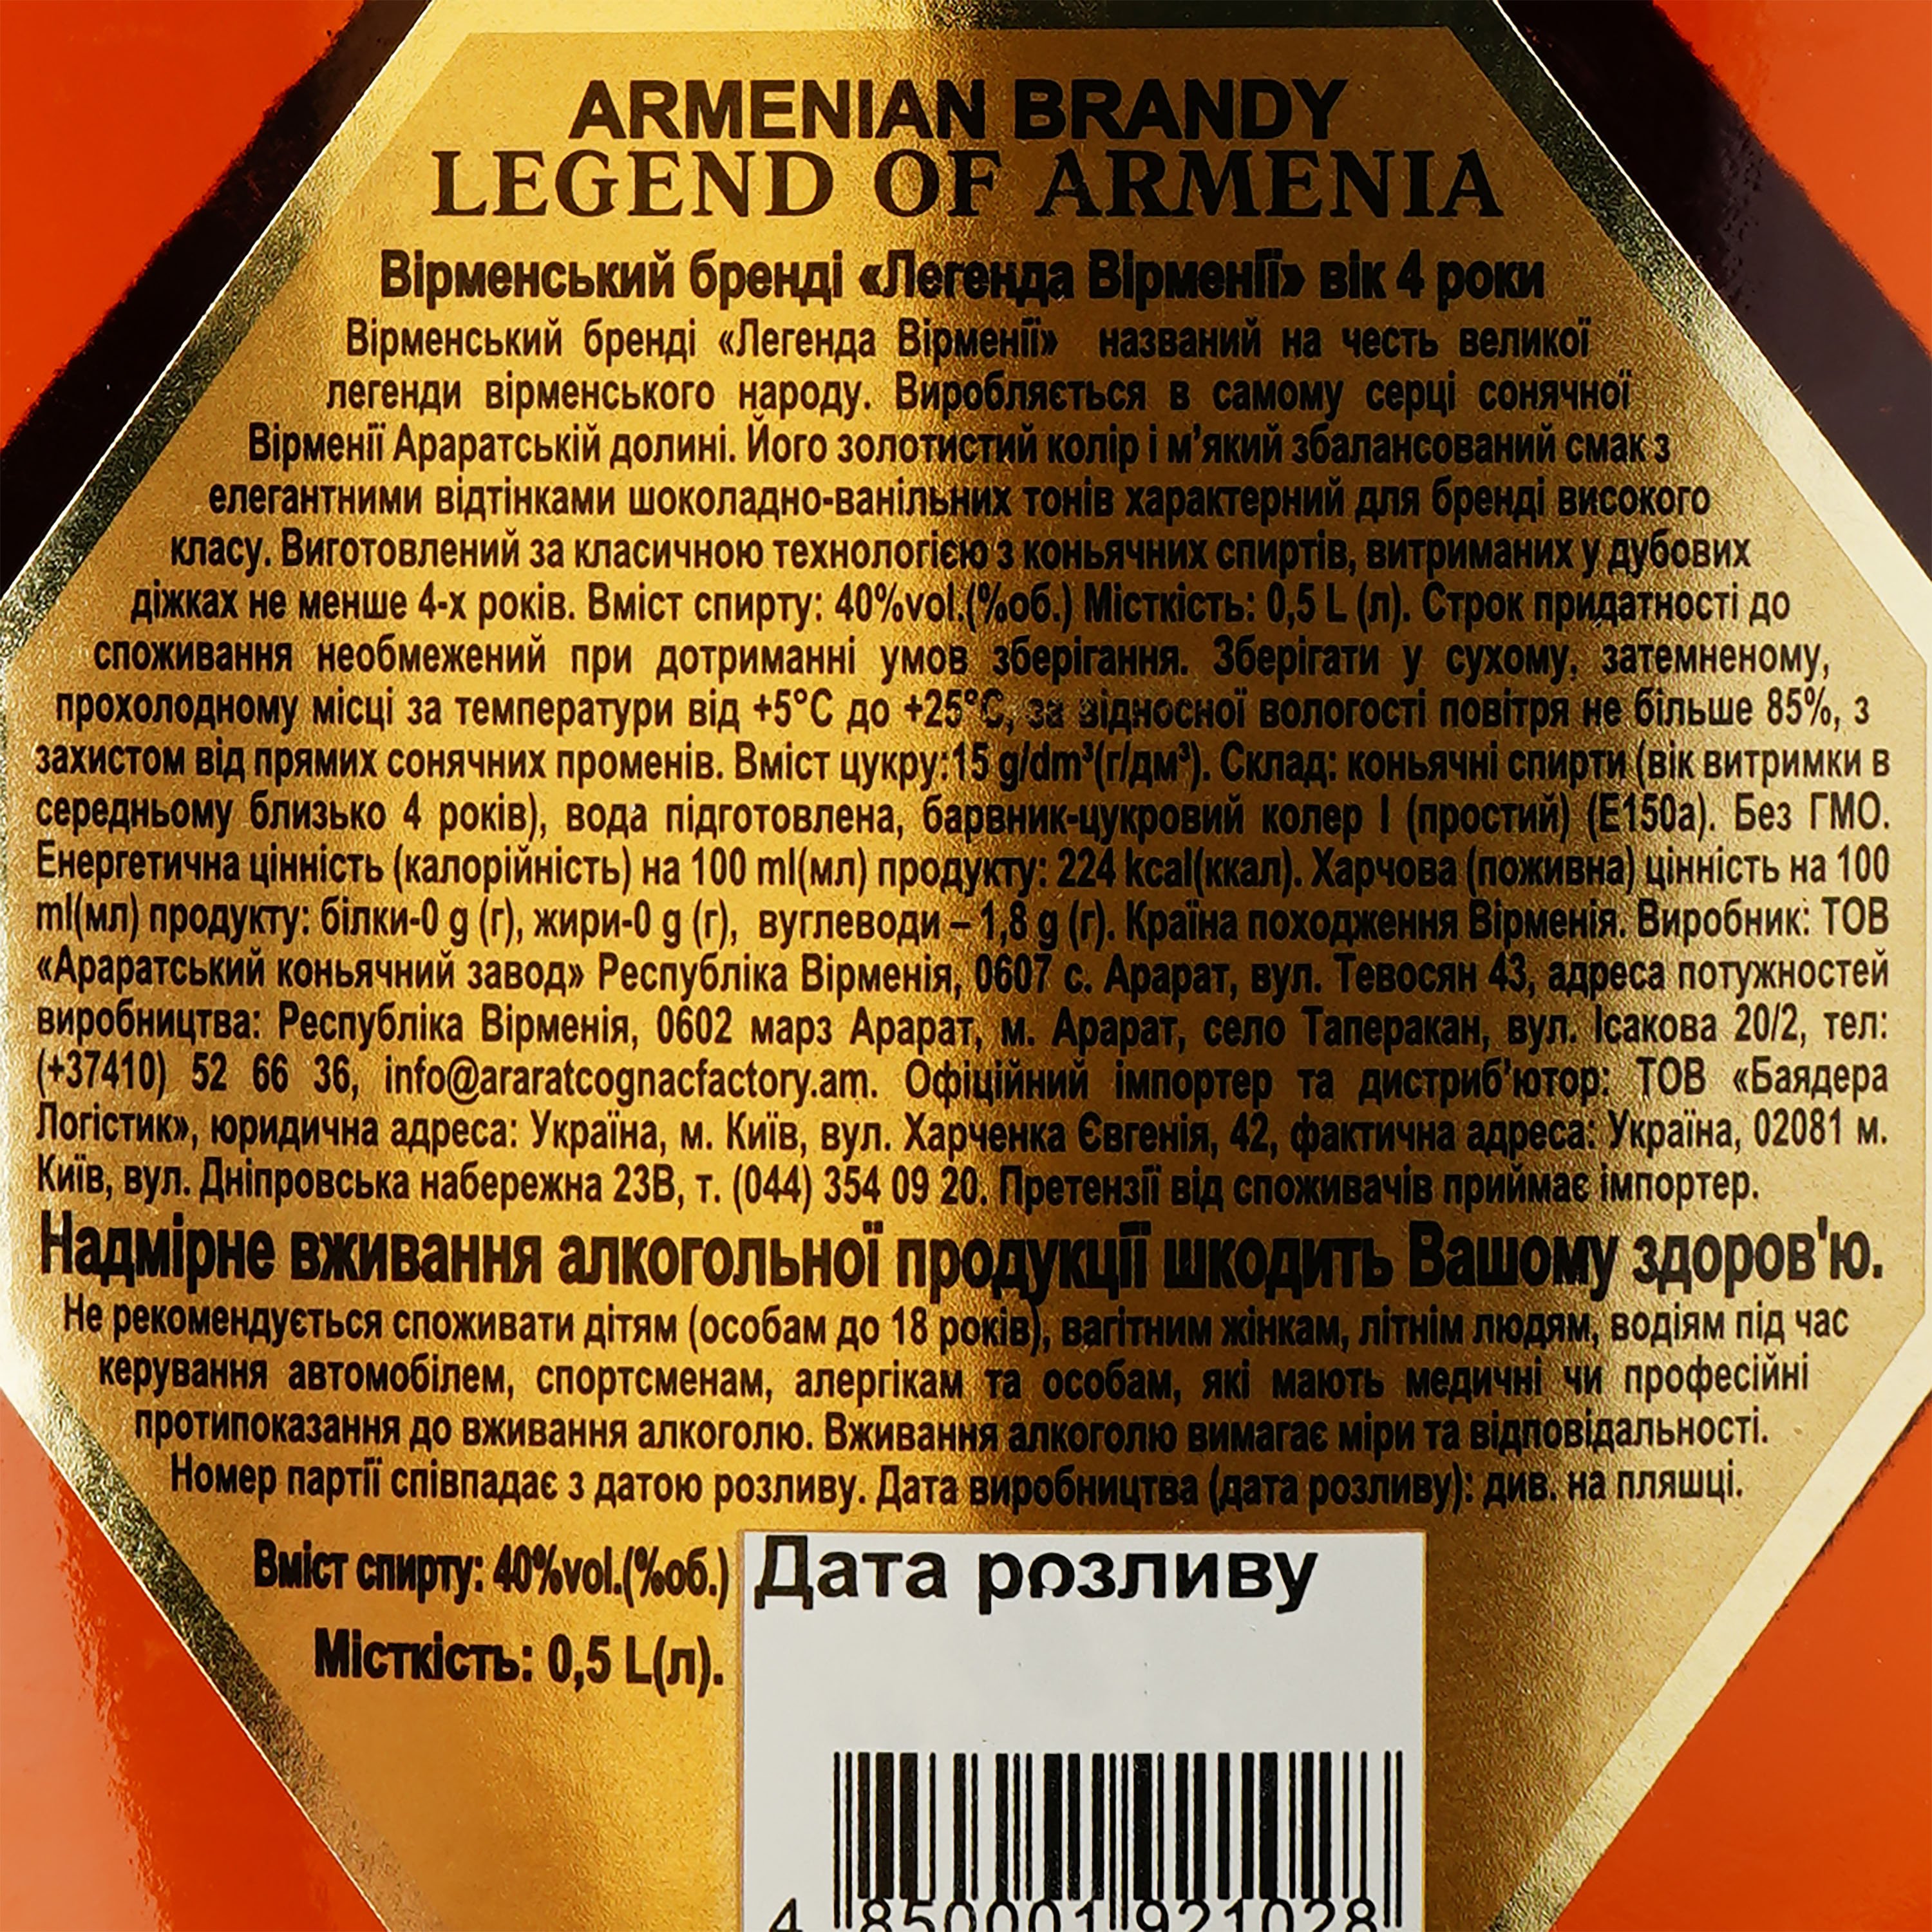 Бренди Legend of Armenia 4 года выдержки 40% 0.5 л, в подарочной упаковке - фото 3